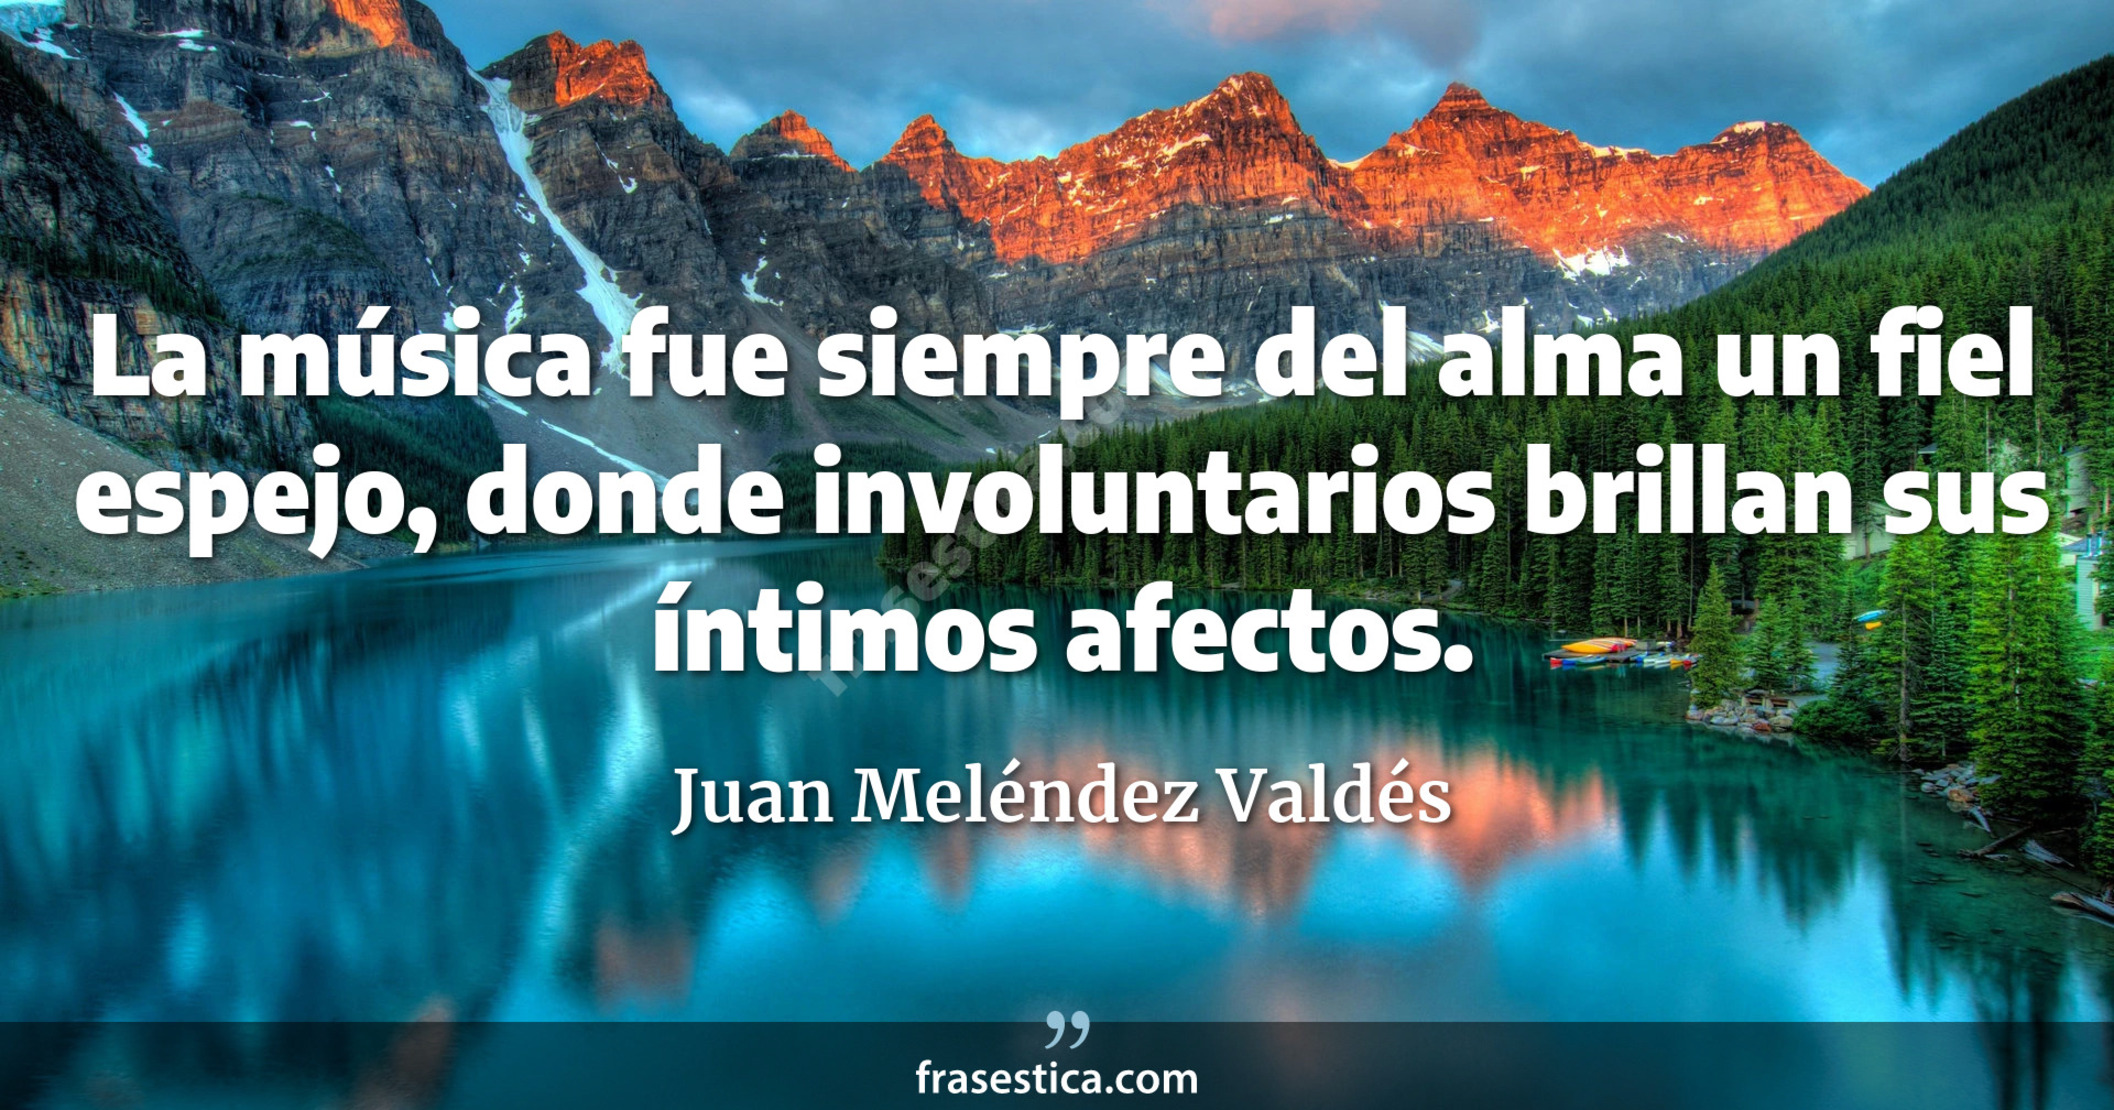 La música fue siempre del alma un fiel espejo, donde involuntarios brillan sus íntimos afectos. - Juan Meléndez Valdés